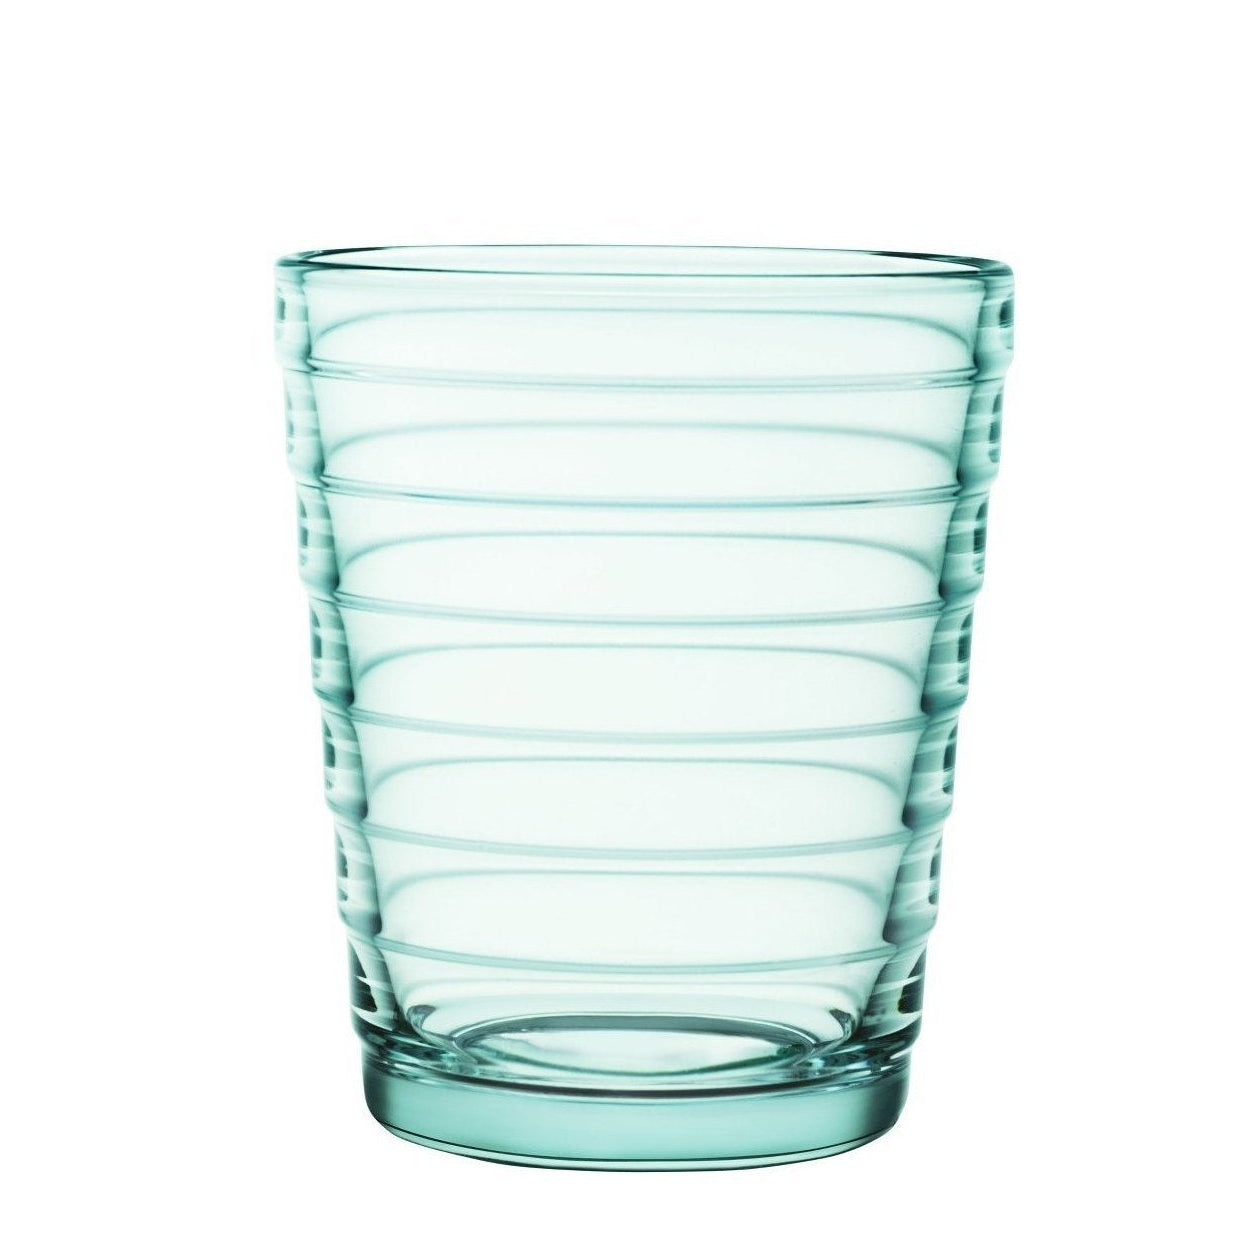 Iittala Aino Aalto Brille Wassergrün 2 PCS, 22CL